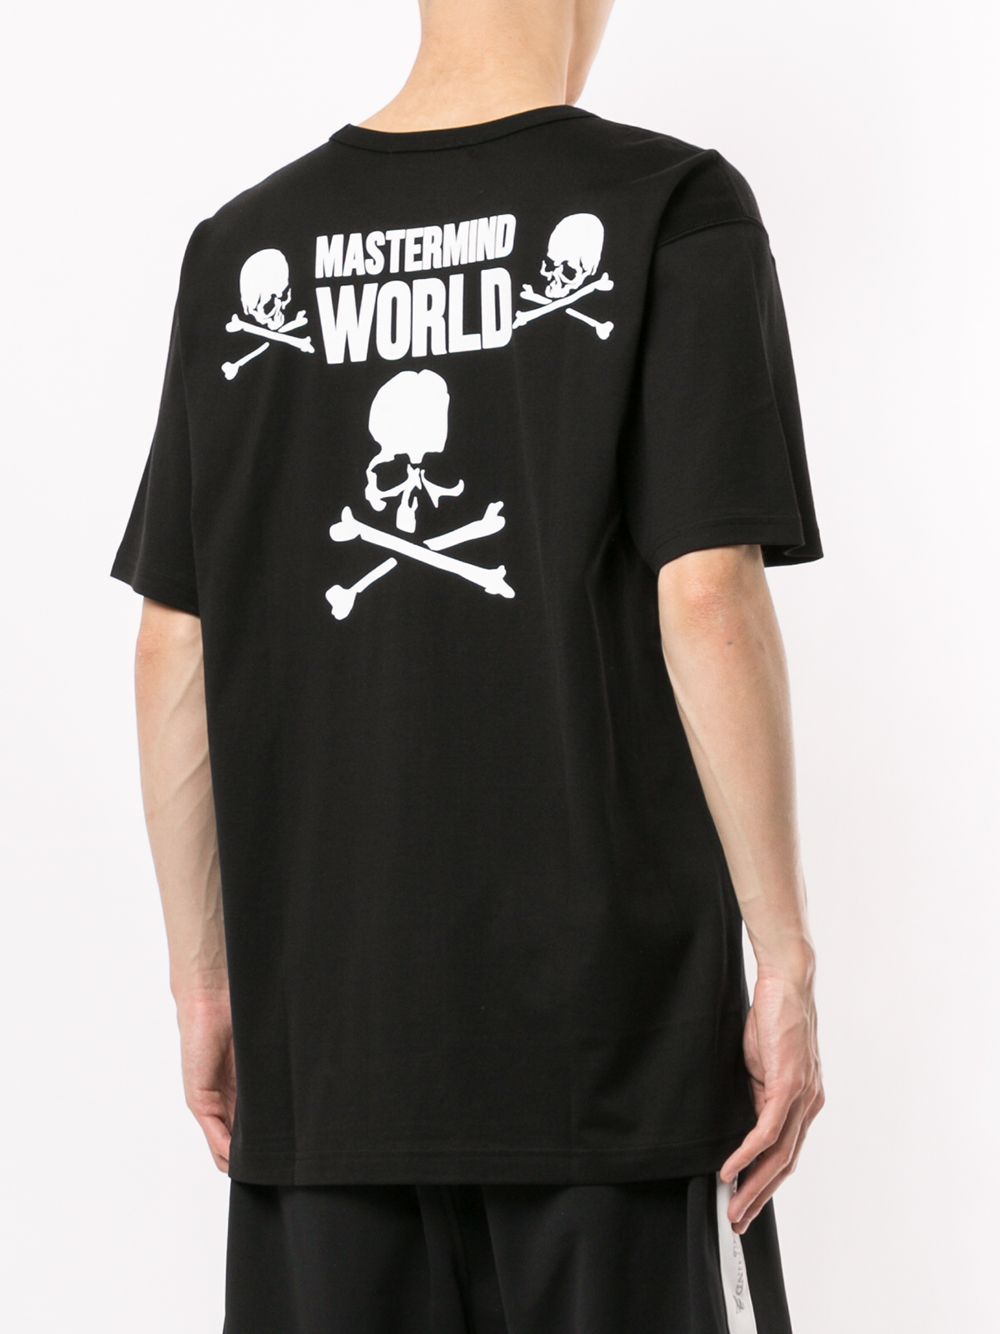 фото Mastermind world футболка с круглым вырезом и надписью